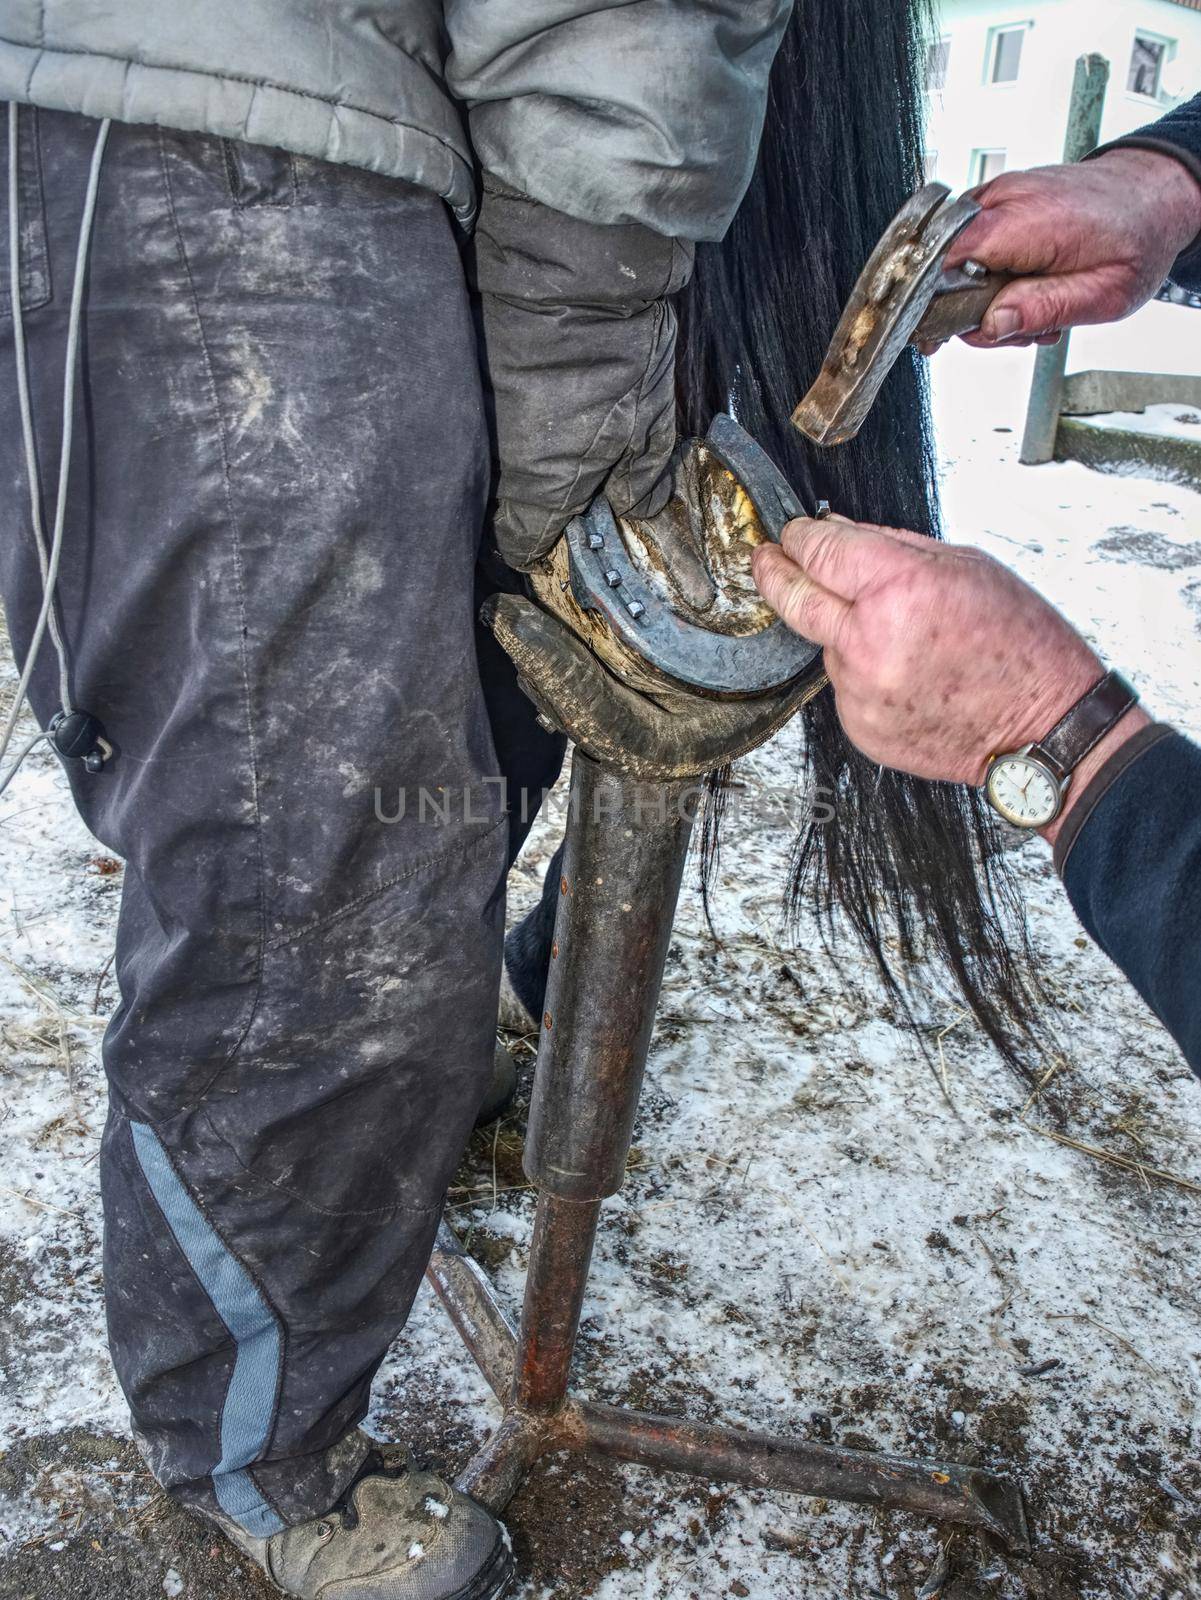 Farrier hammering new iron shoe on horse hoof. Blacksmith handle hoof to set up horseshoe